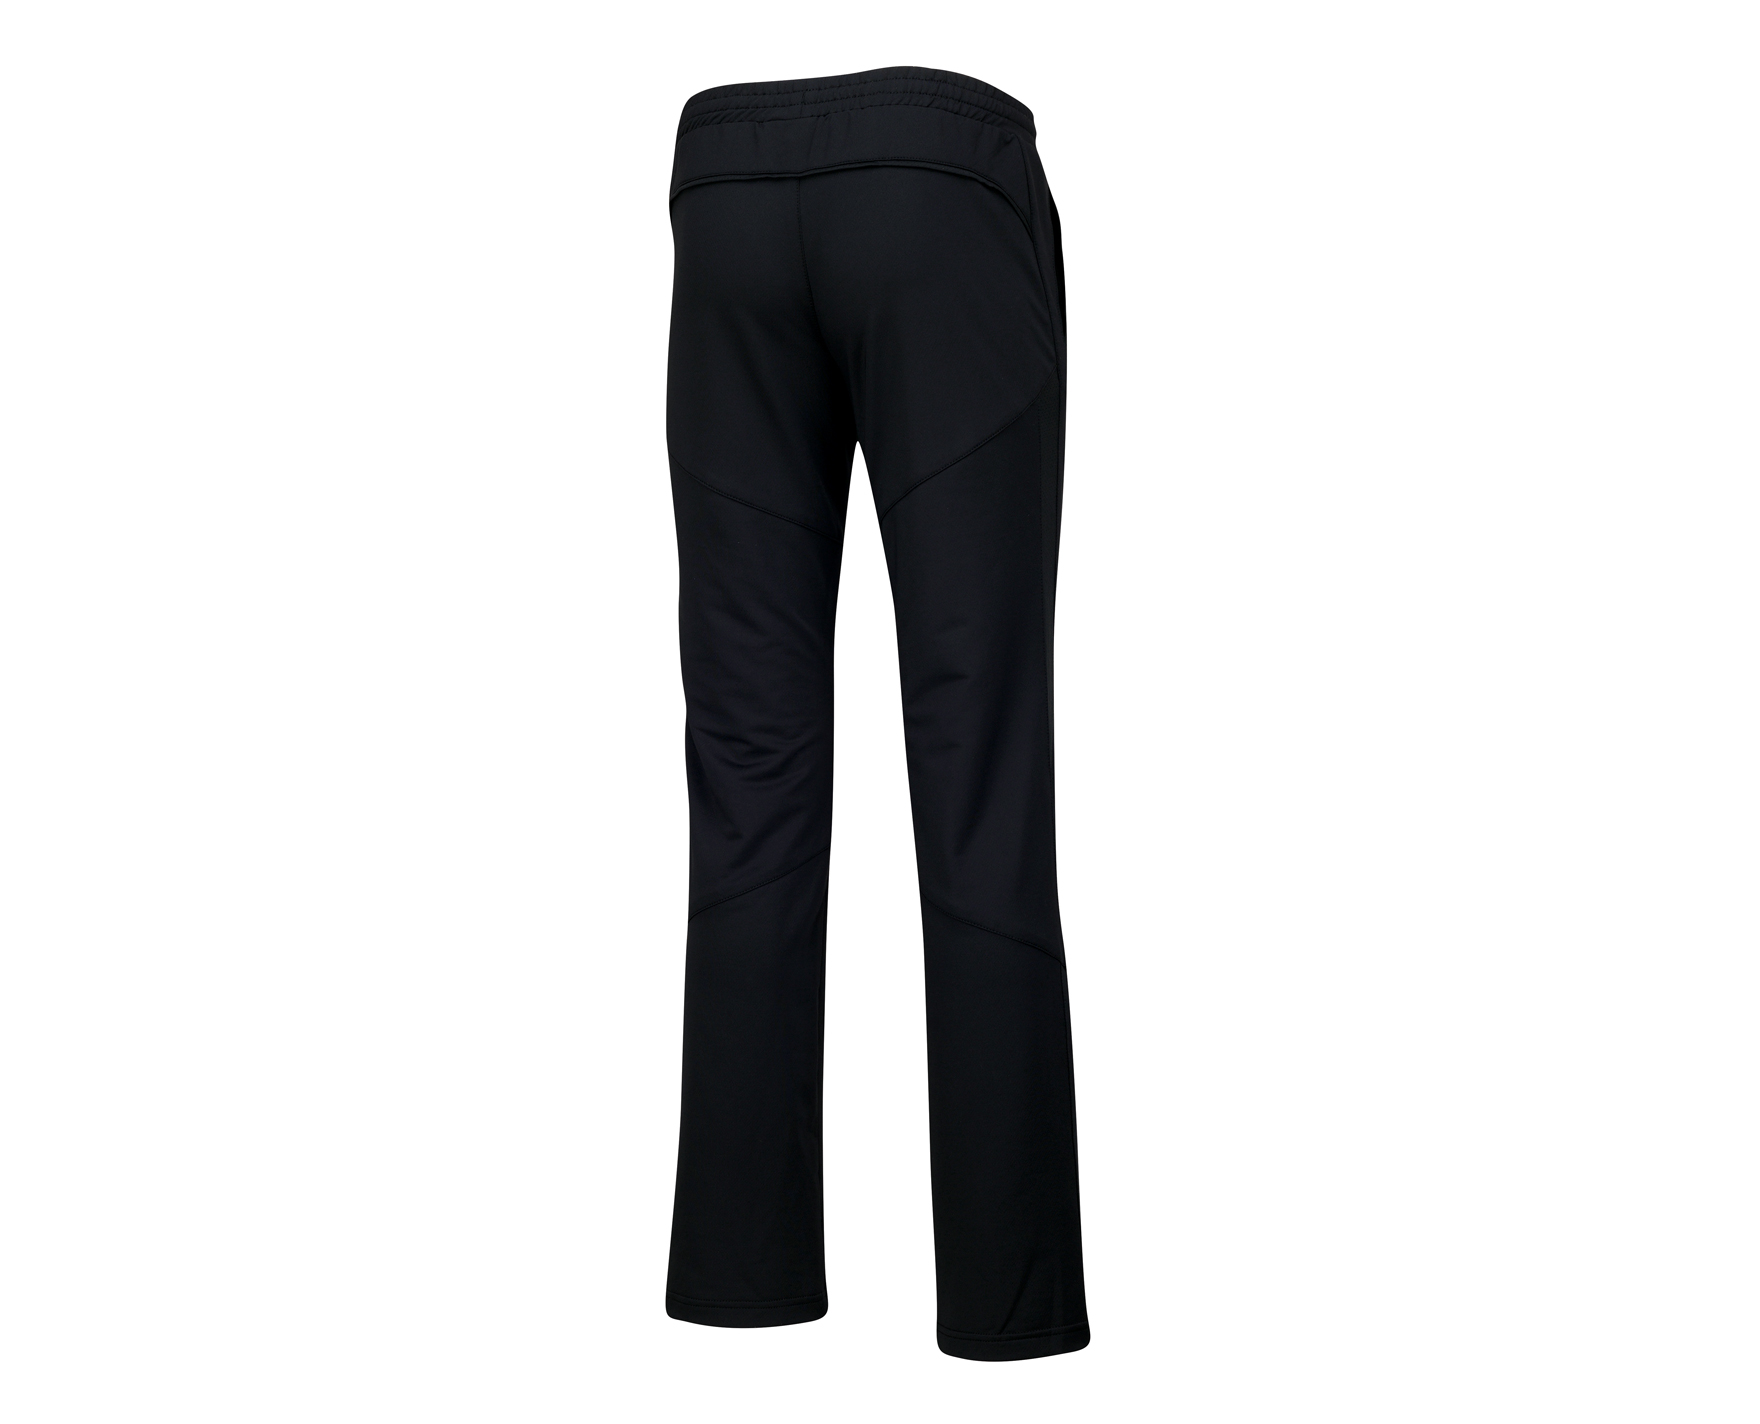 Badminton Clothes - Women's Pants [BLACK]